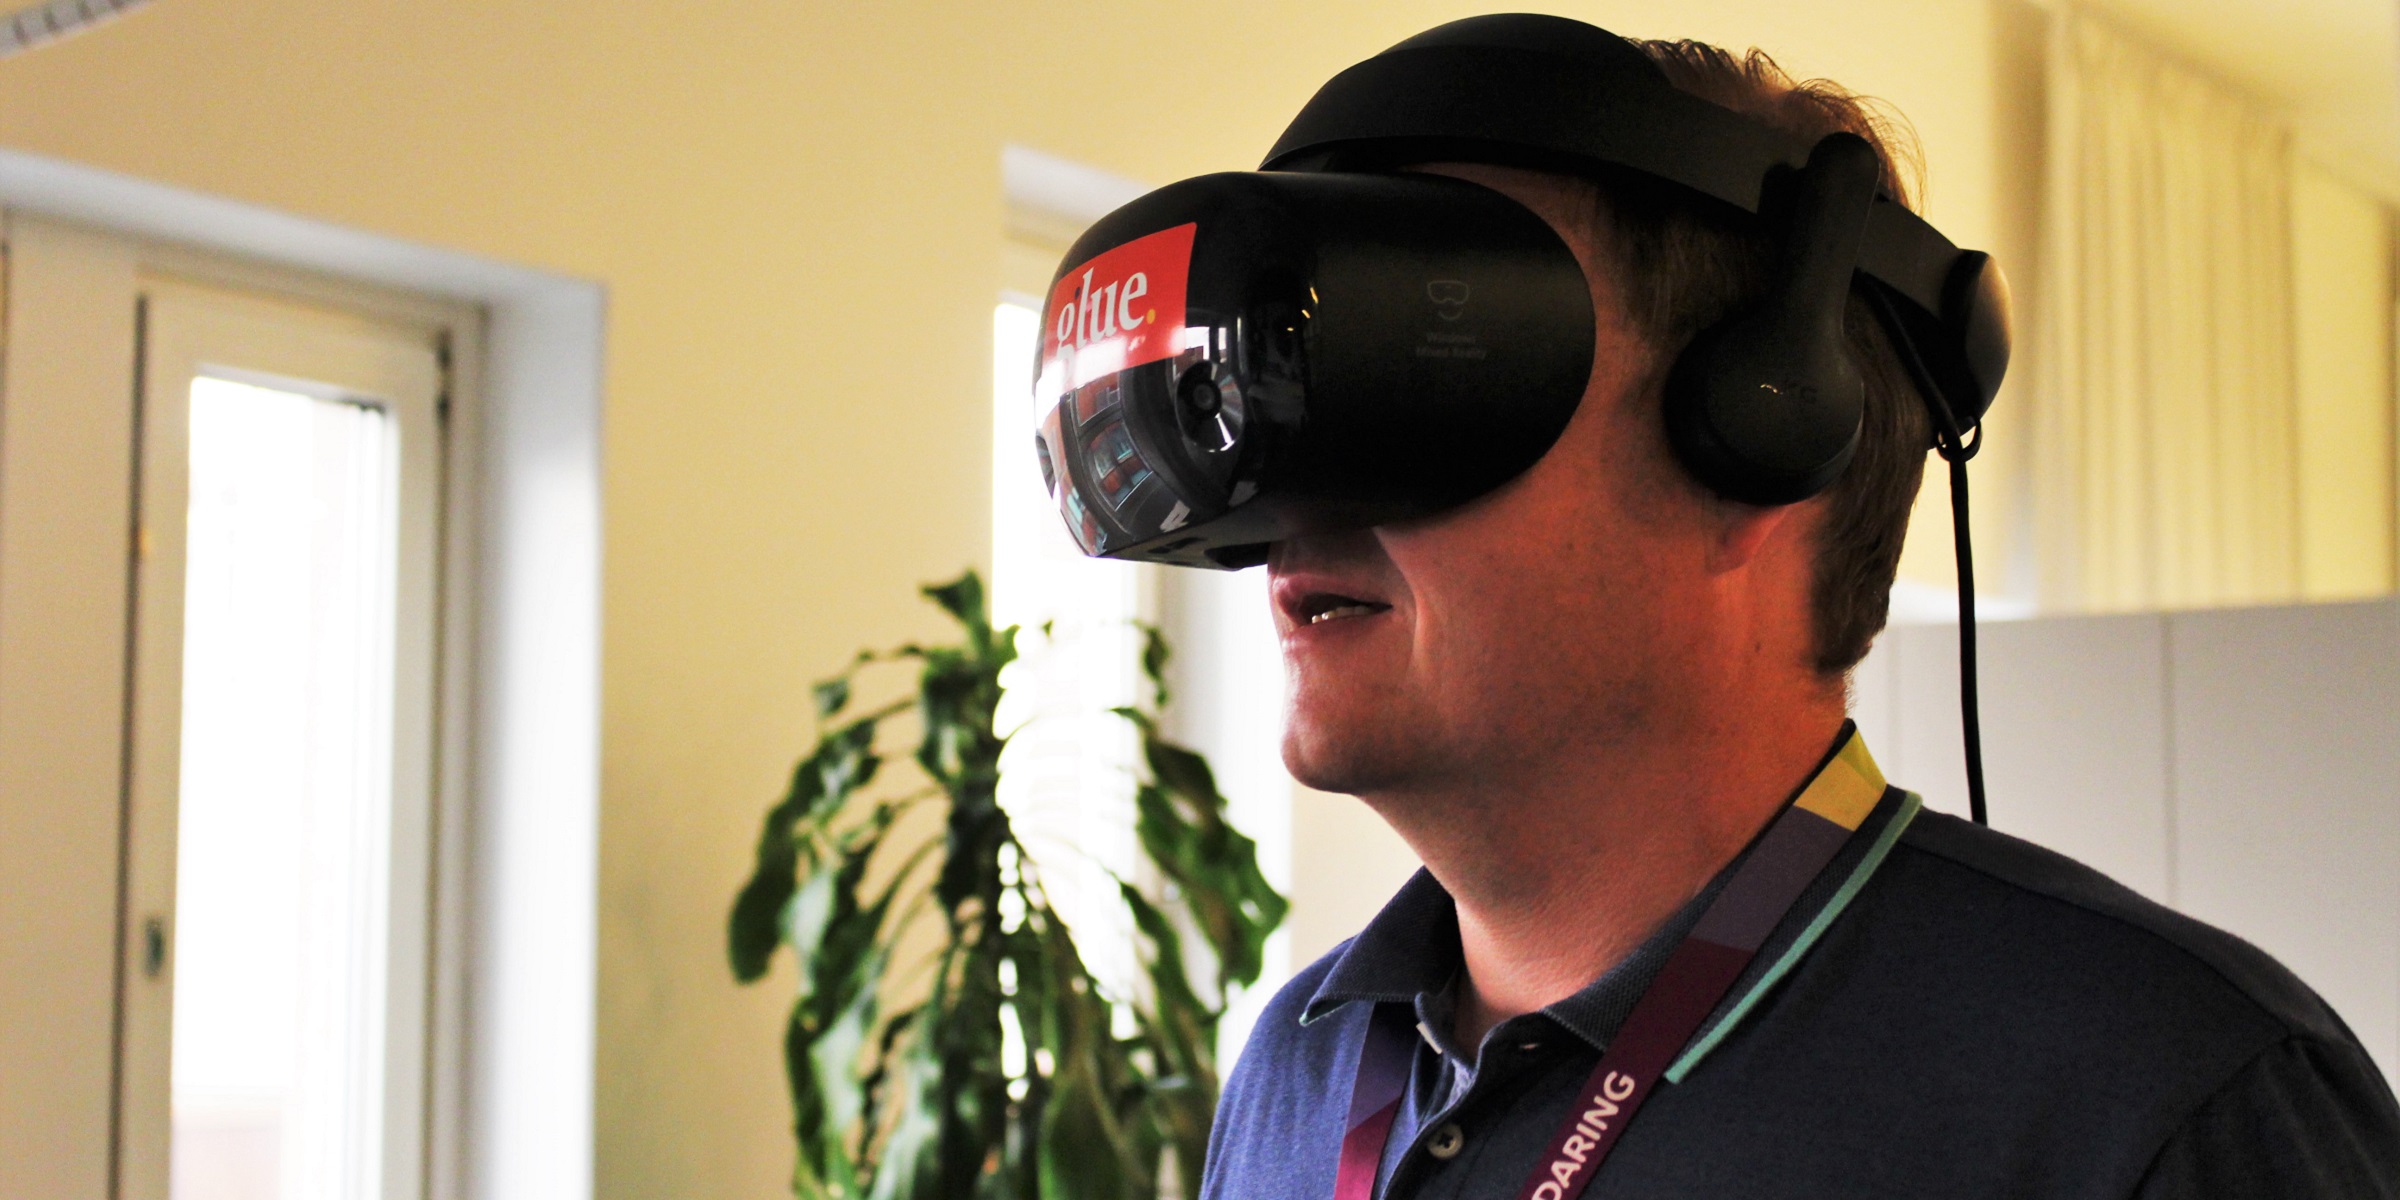 Henkilö osallistuu virtuaalikokoukseen päässään VR-lasit